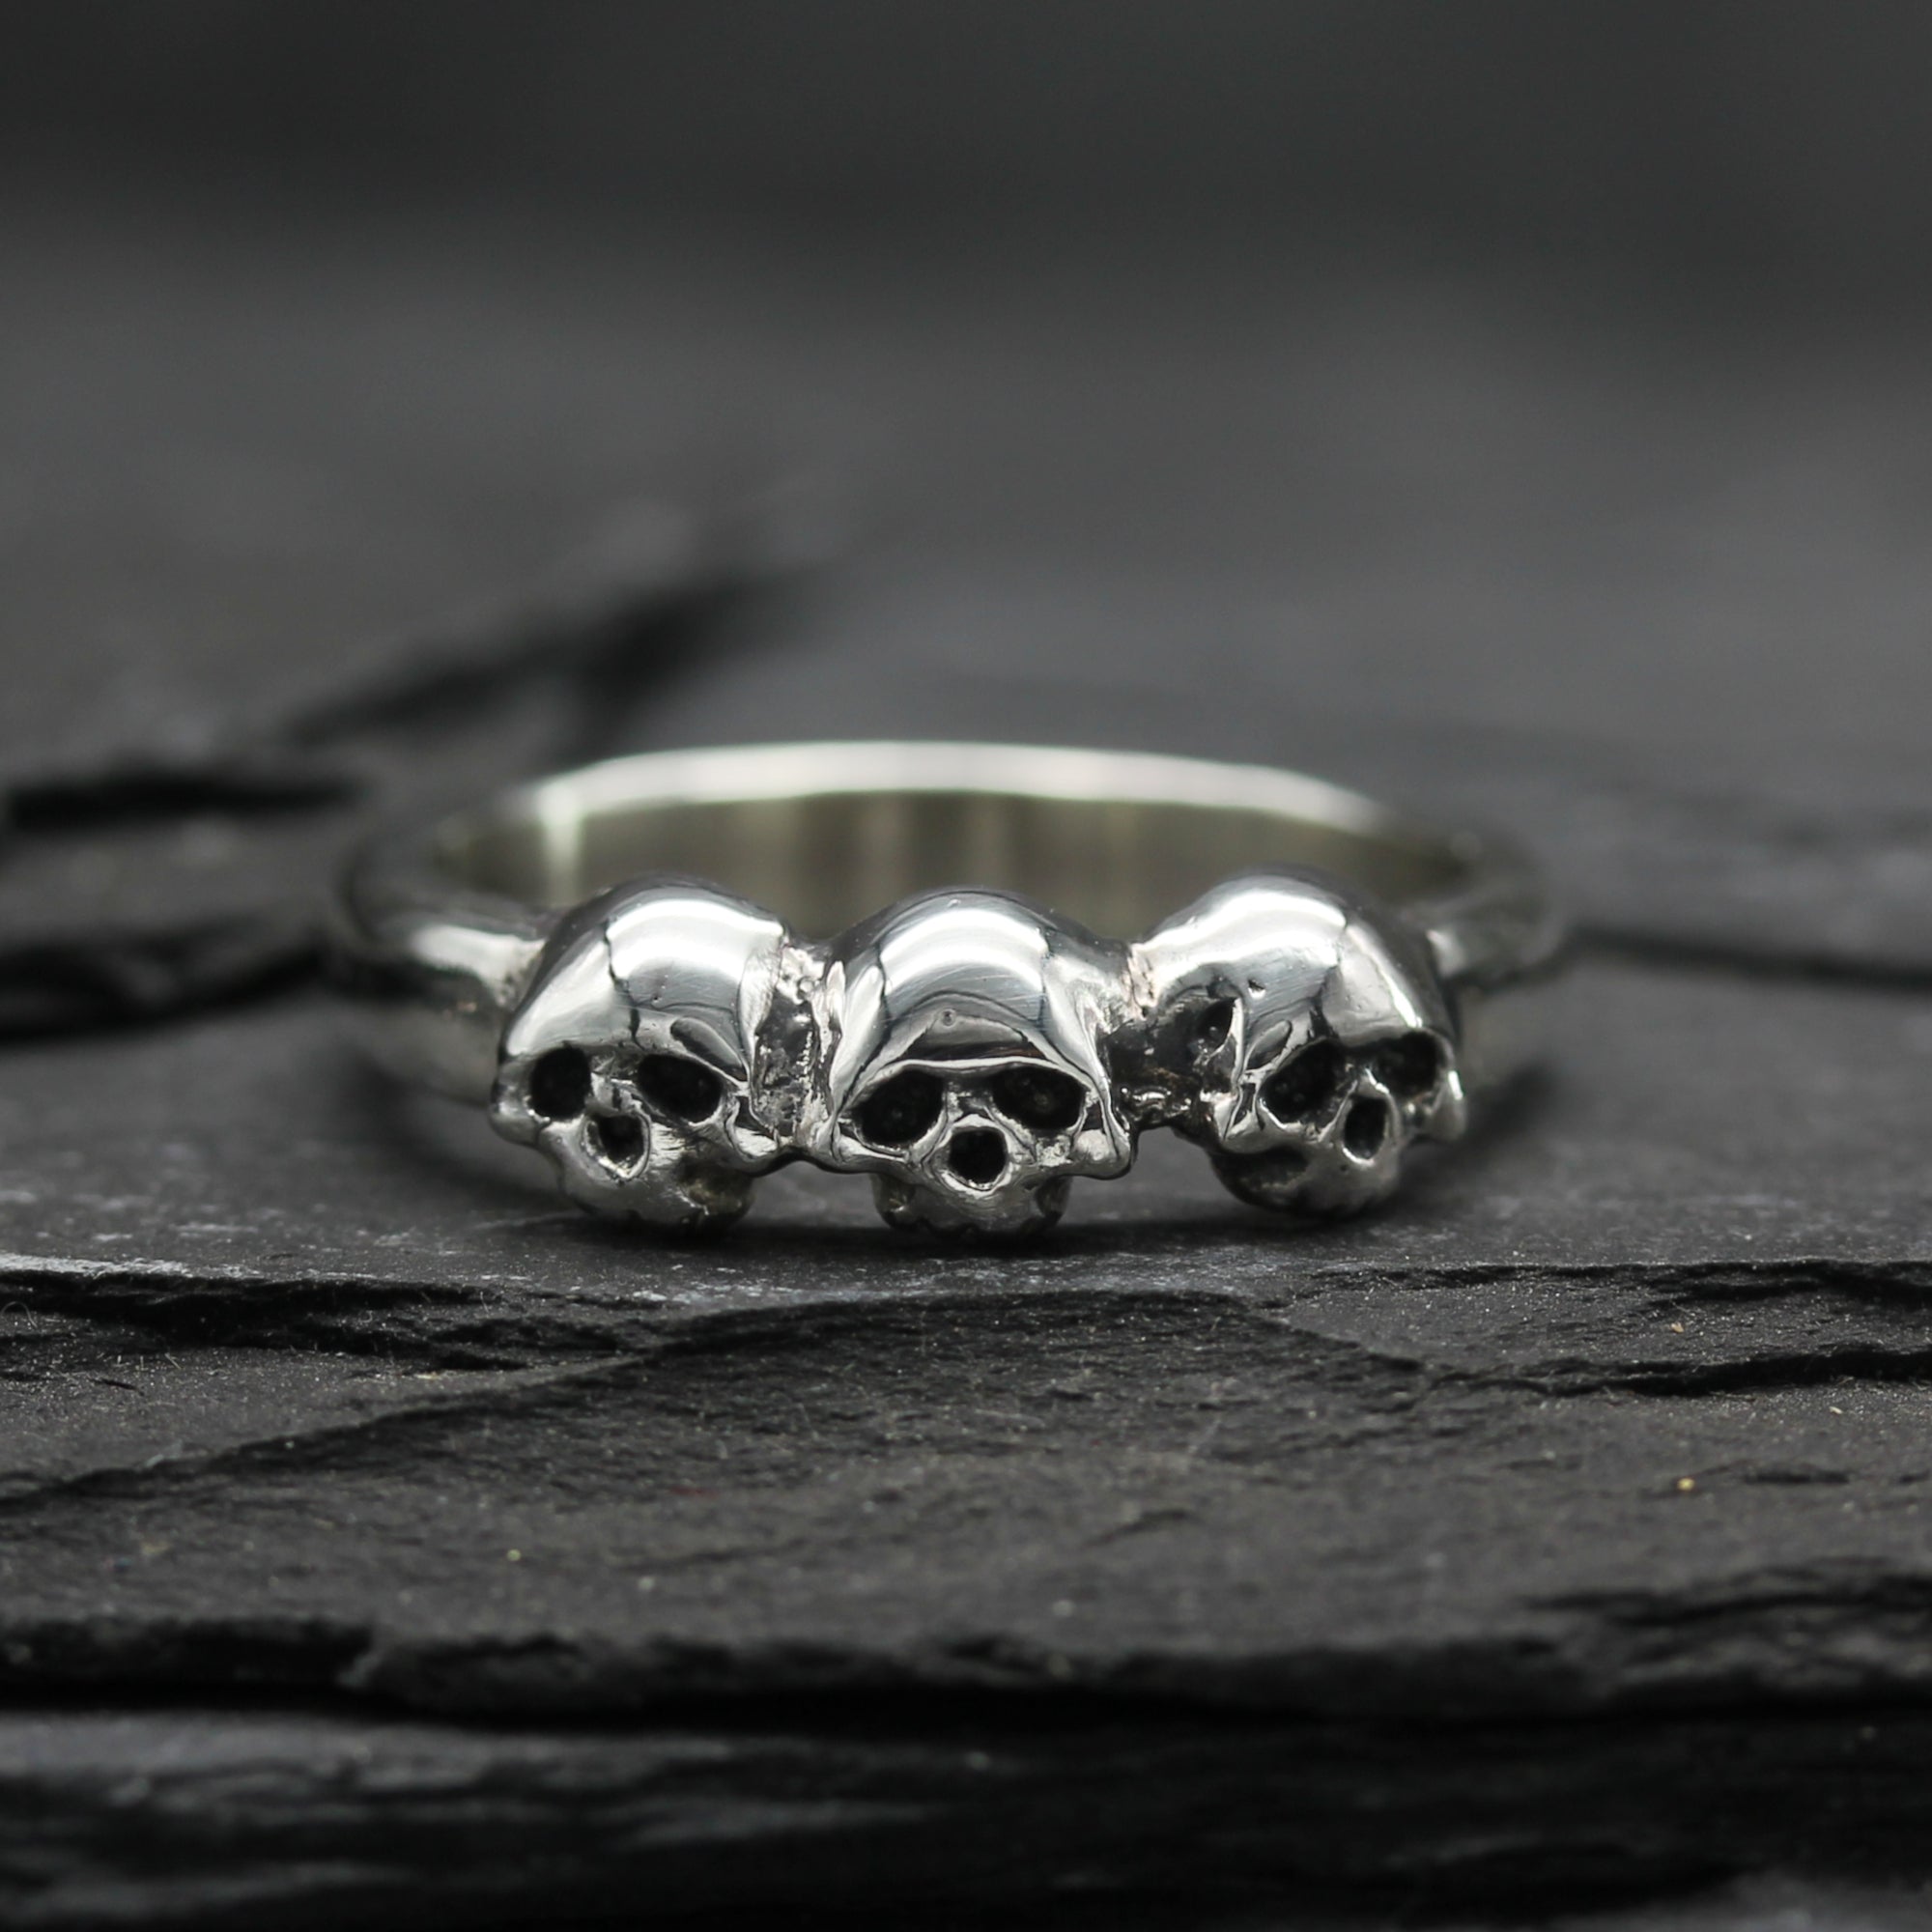 Silver Skull Ring